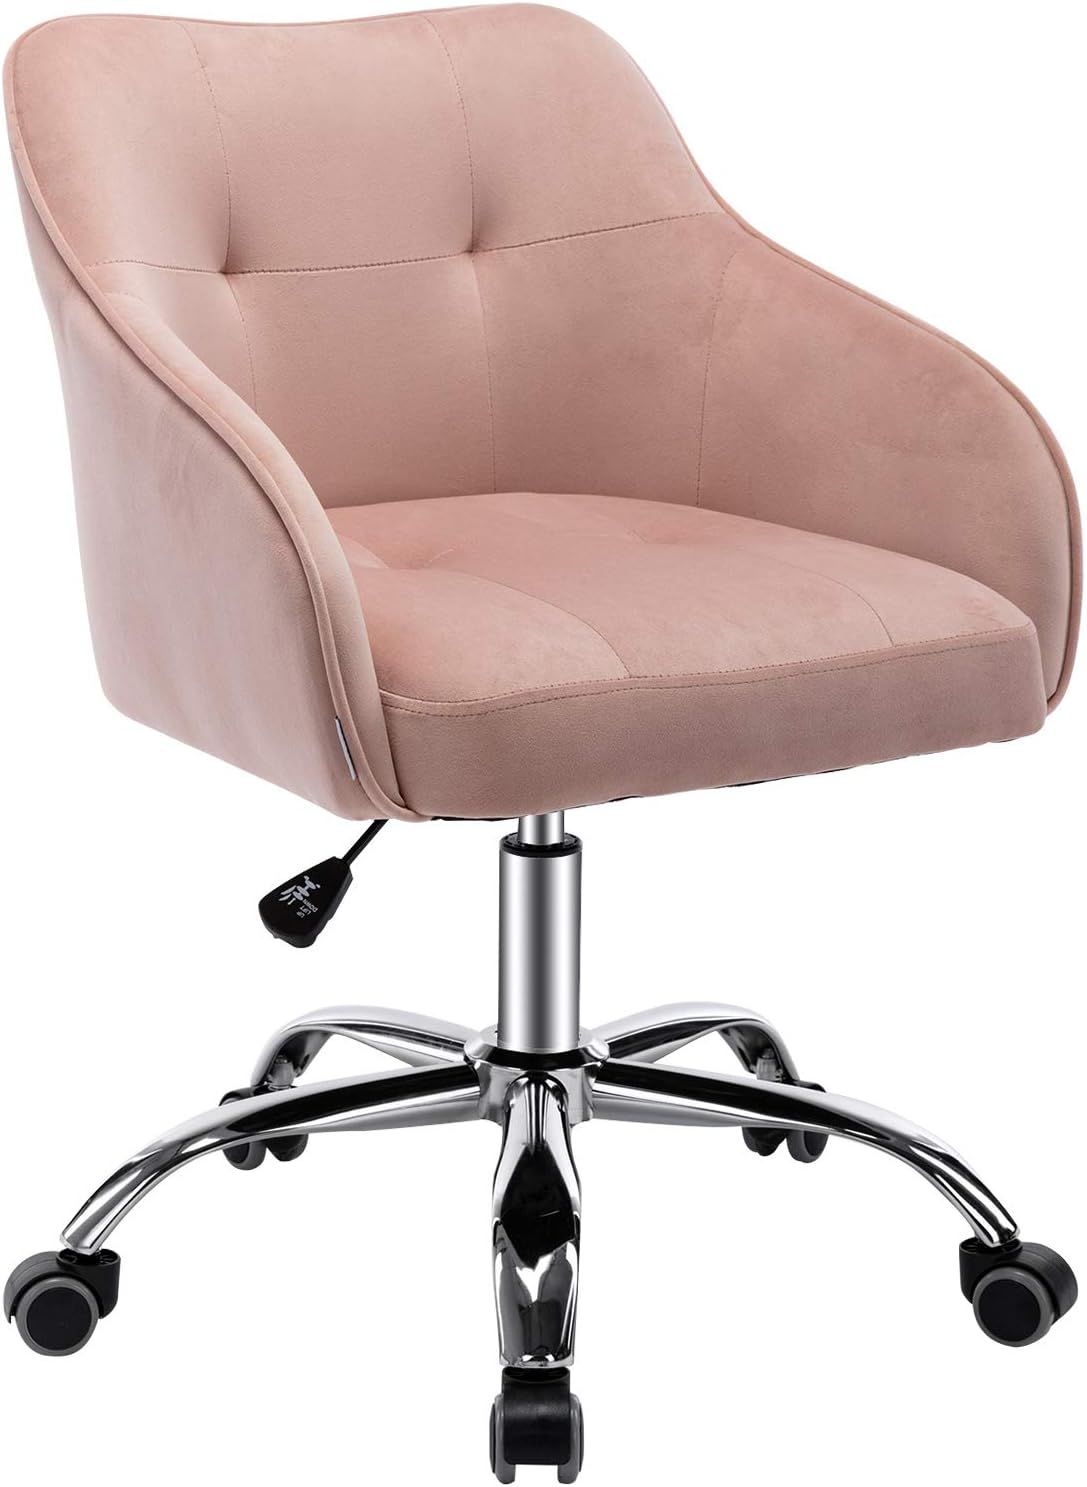 Velvet Desk Chair for Home Office, Soft Height Adjustable 360°Swivel Computer Chair, Upholstered... | Amazon (US)